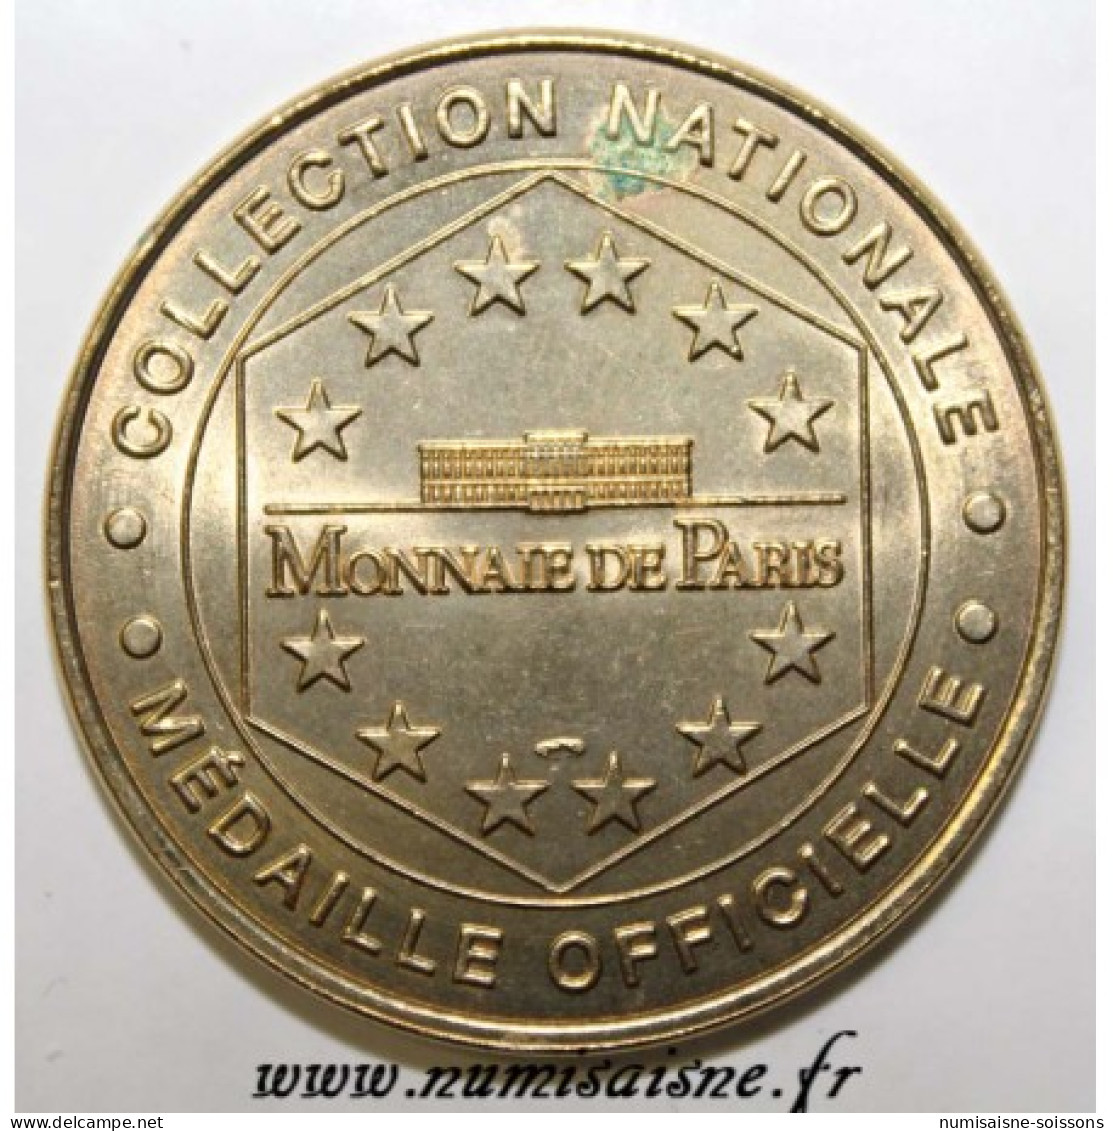 75 - PARIS - MÉNAGERIE DU JARDIN DES PLANTES - SINGE ET BOUQUETIN - Monnaie De Paris - 1999 - SPL - Ohne Datum